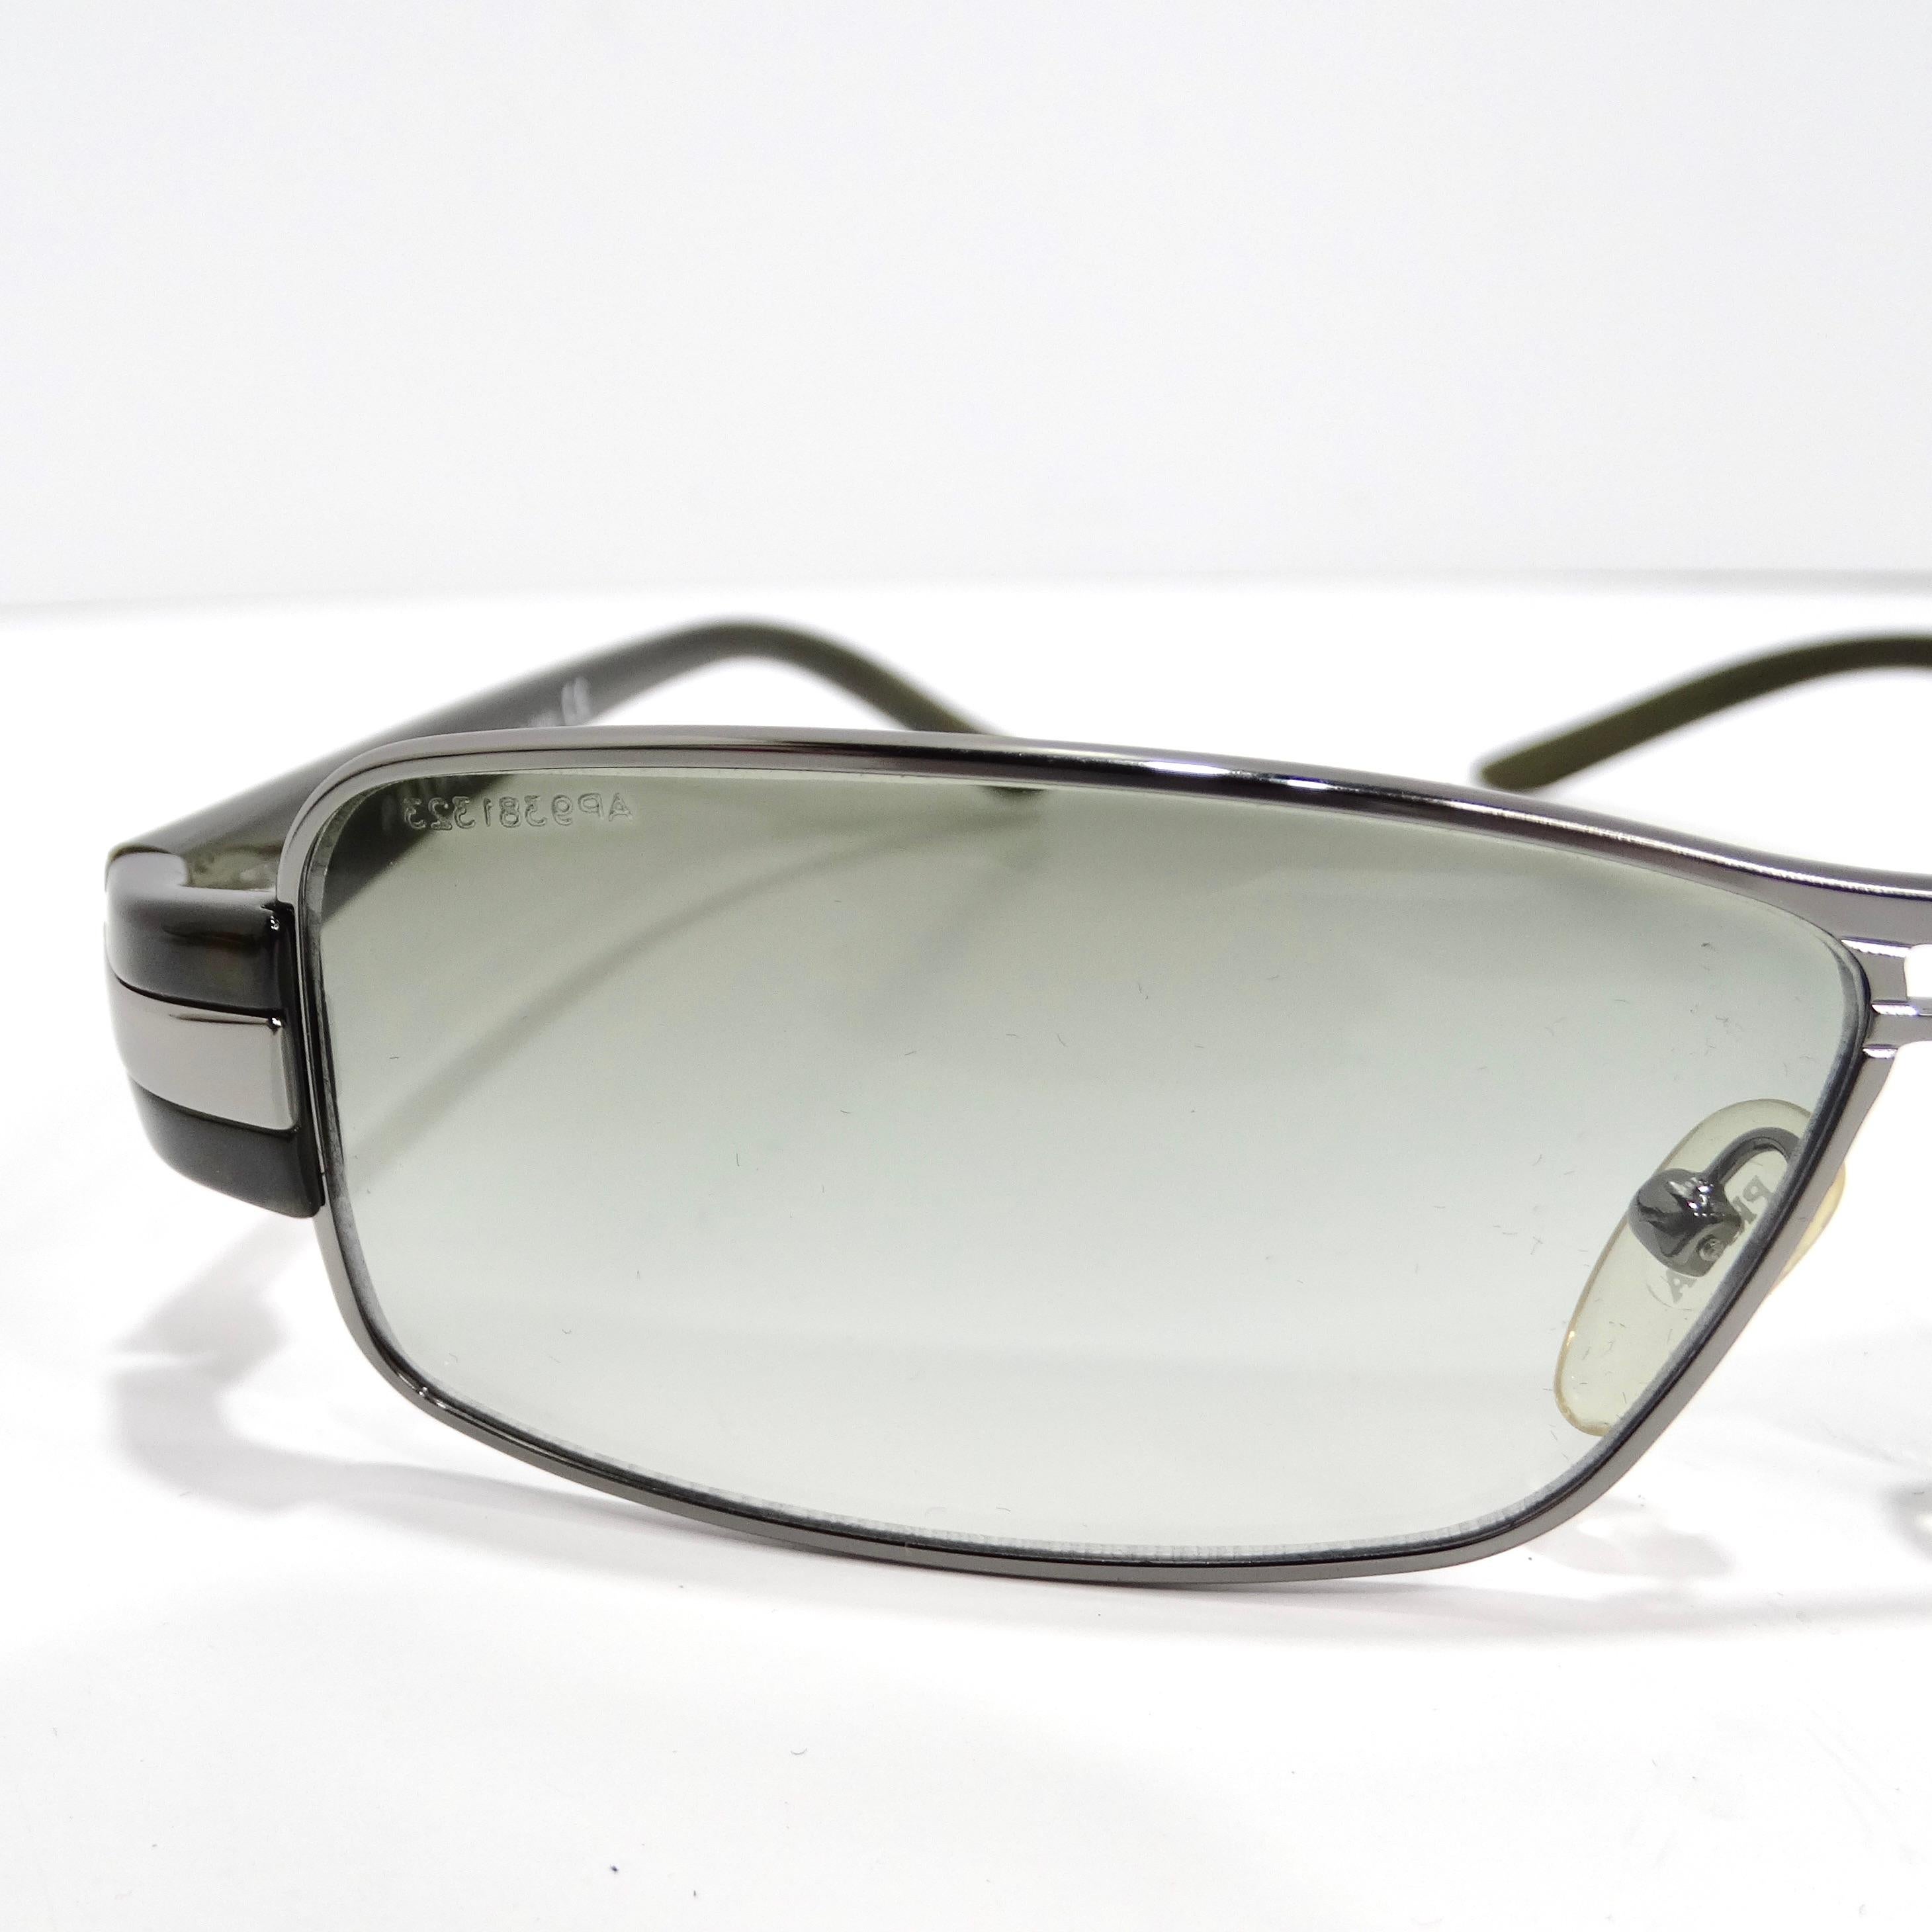 Entrez dans une ère de mode intemporelle avec les lunettes de soleil Prada 1990 argenté vertes rectangulaires, un accessoire classique qui combine la sophistication avec une touche de charme vintage. Ces lunettes de soleil présentent de fines